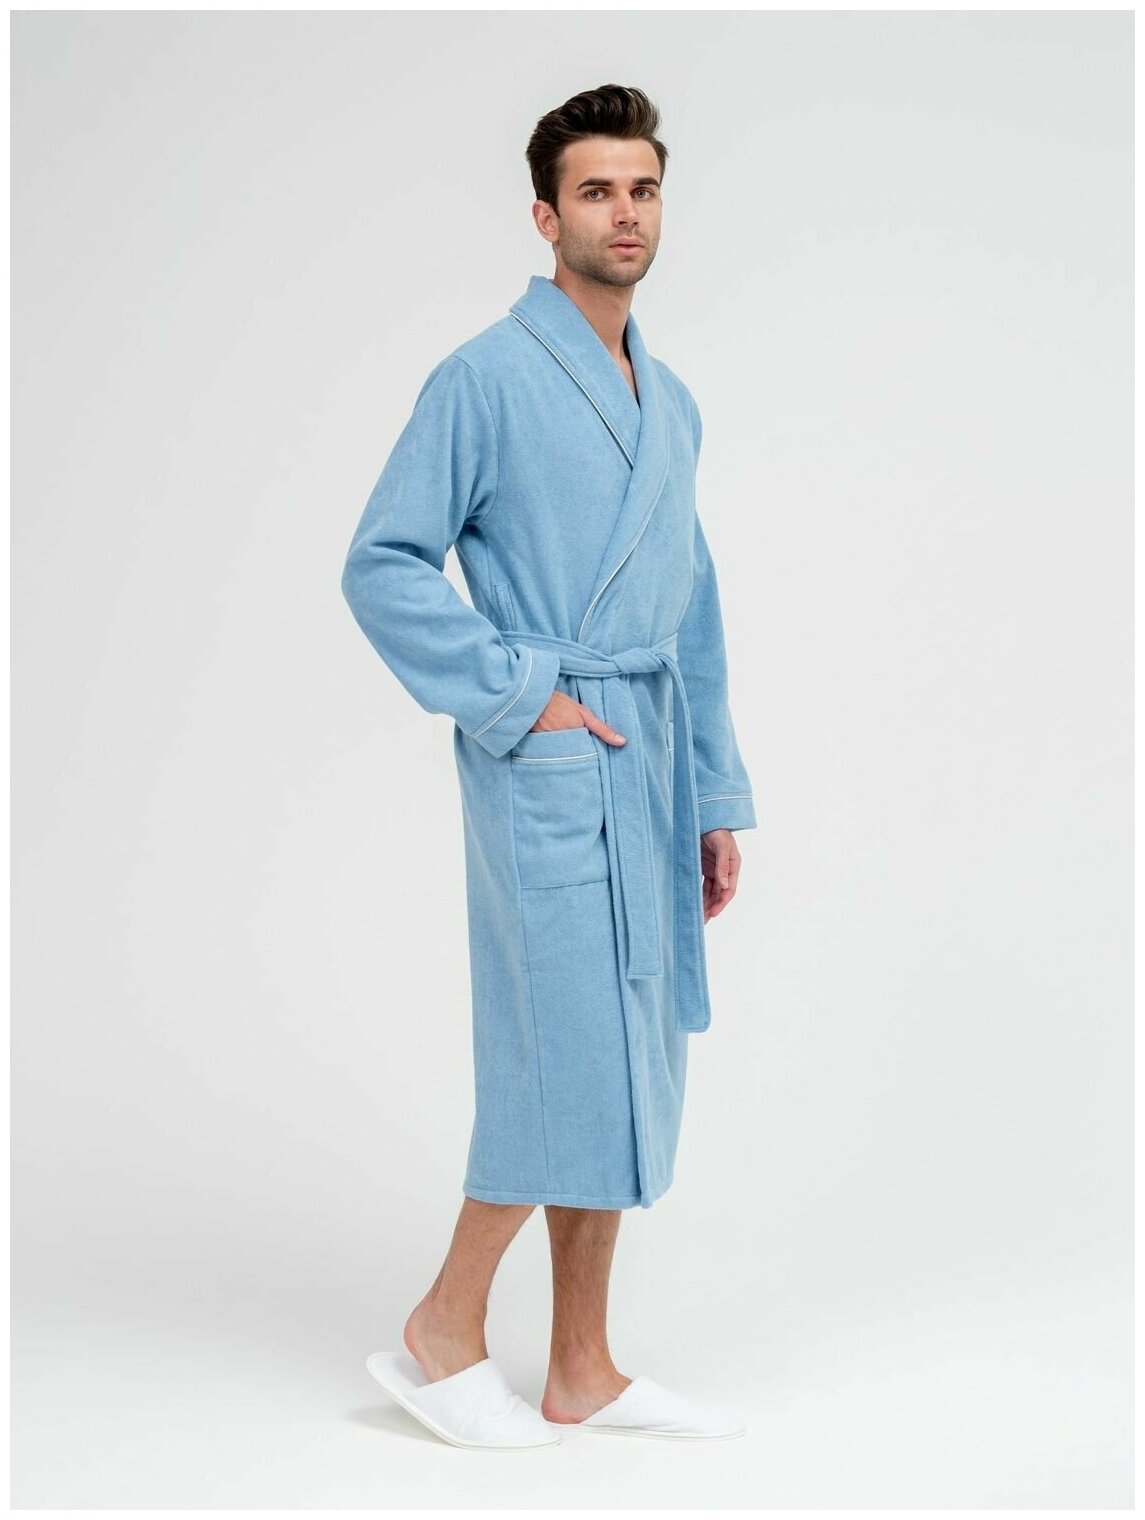 Мужской махровый халат с кантом, голубой. Размер 58-60 - фотография № 6